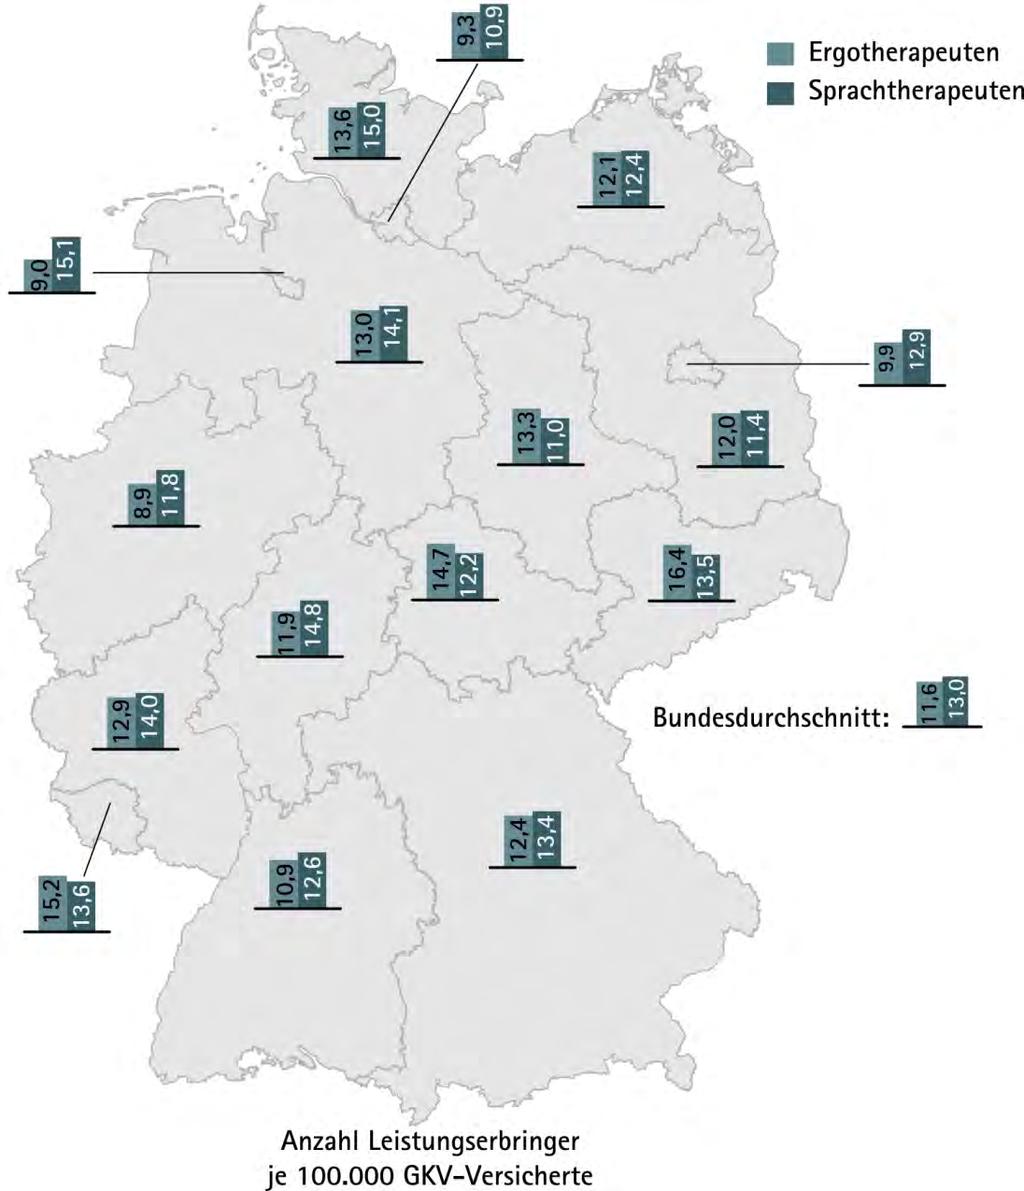 2 Der Heilmittelmarkt 2011 Die Anzahl der Anbieter von sprachtherapeutischen Maßnahmen variiert zwischen 11 je 100.000 Versicherte in Hamburg und Sachsen-Anhalt und 15 je 100.